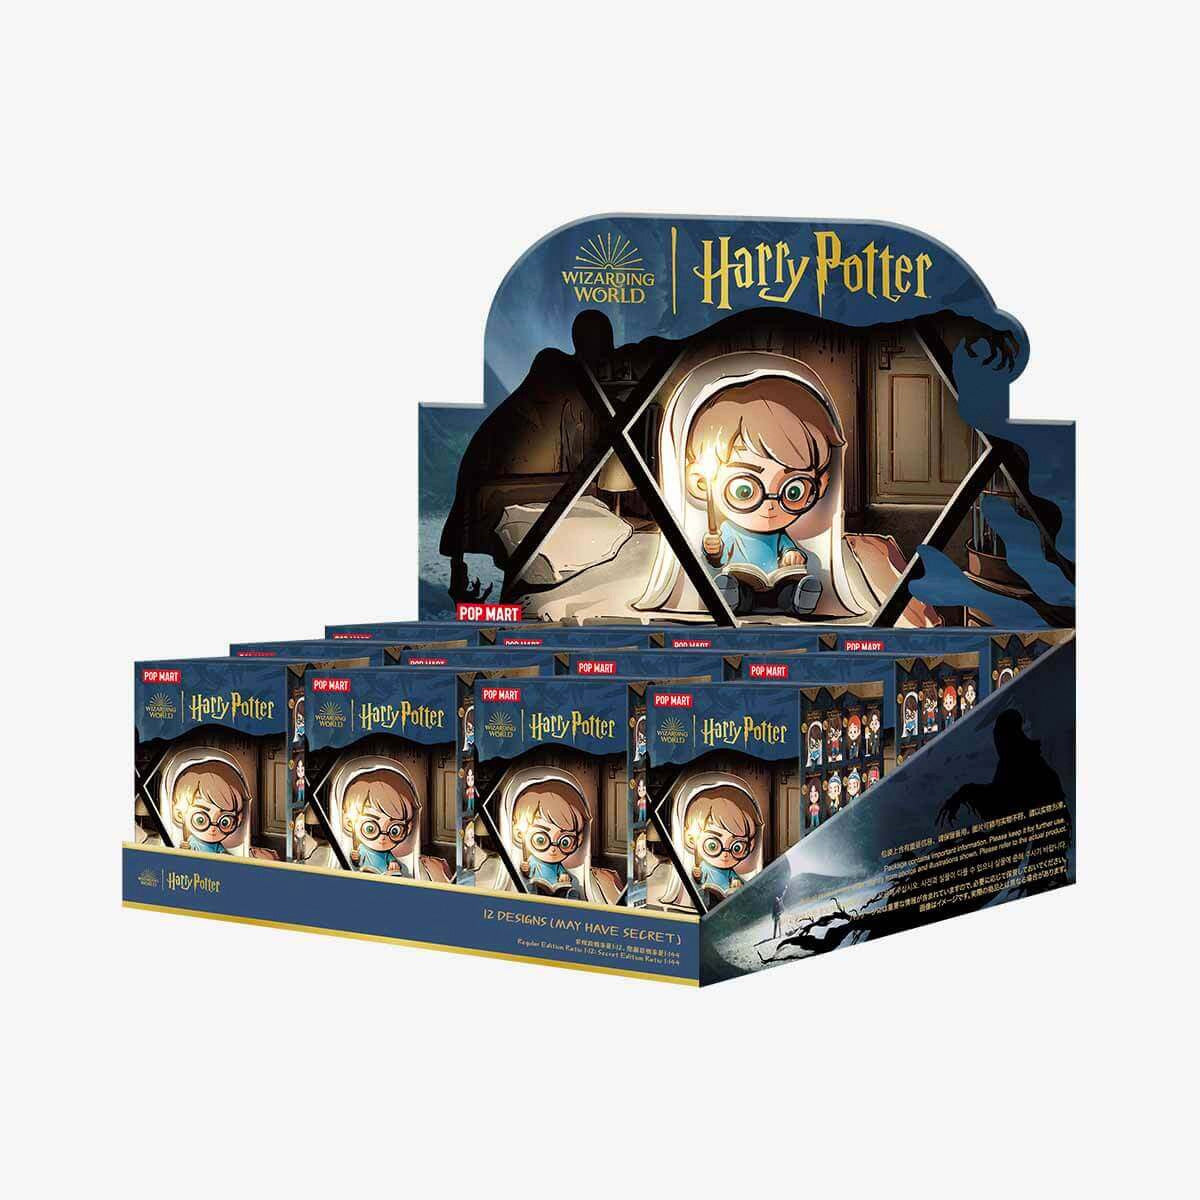 【New】Pop Mart: Harry Potter and the Prisoner of Azkaban Series Blind Box Random Style